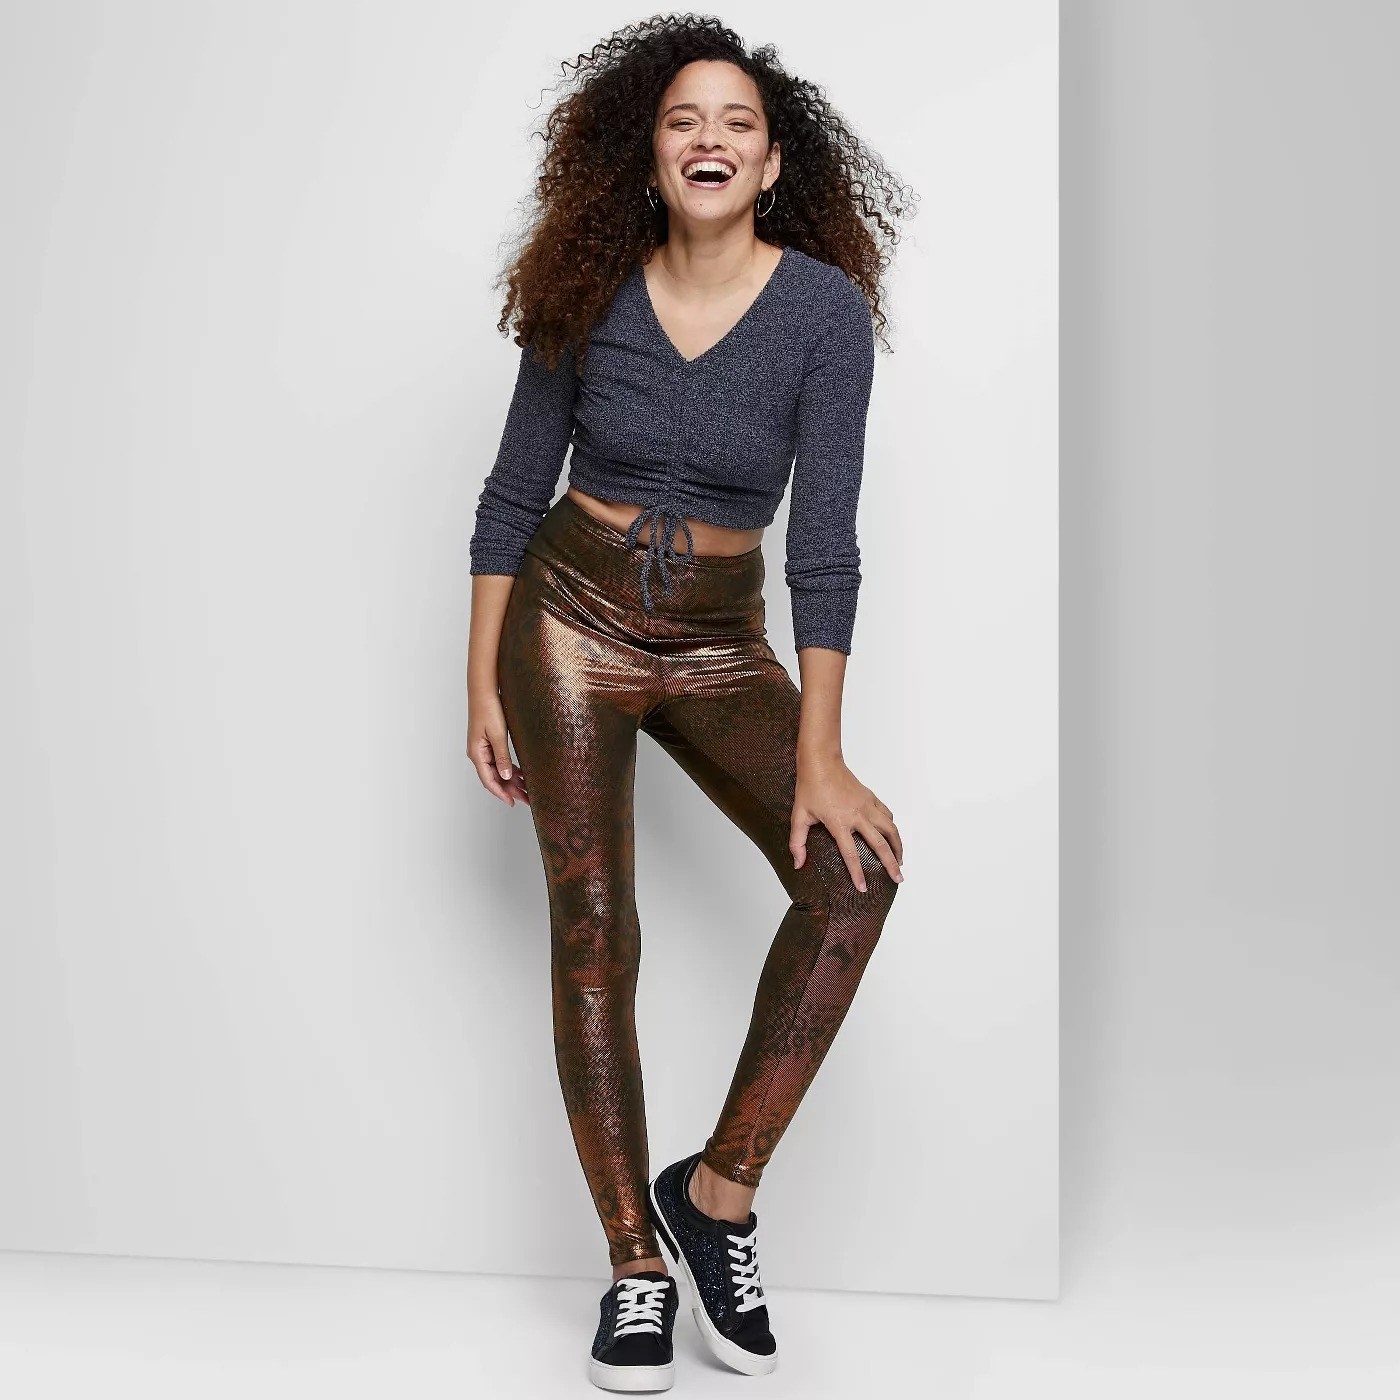 Model wearing brown leggings